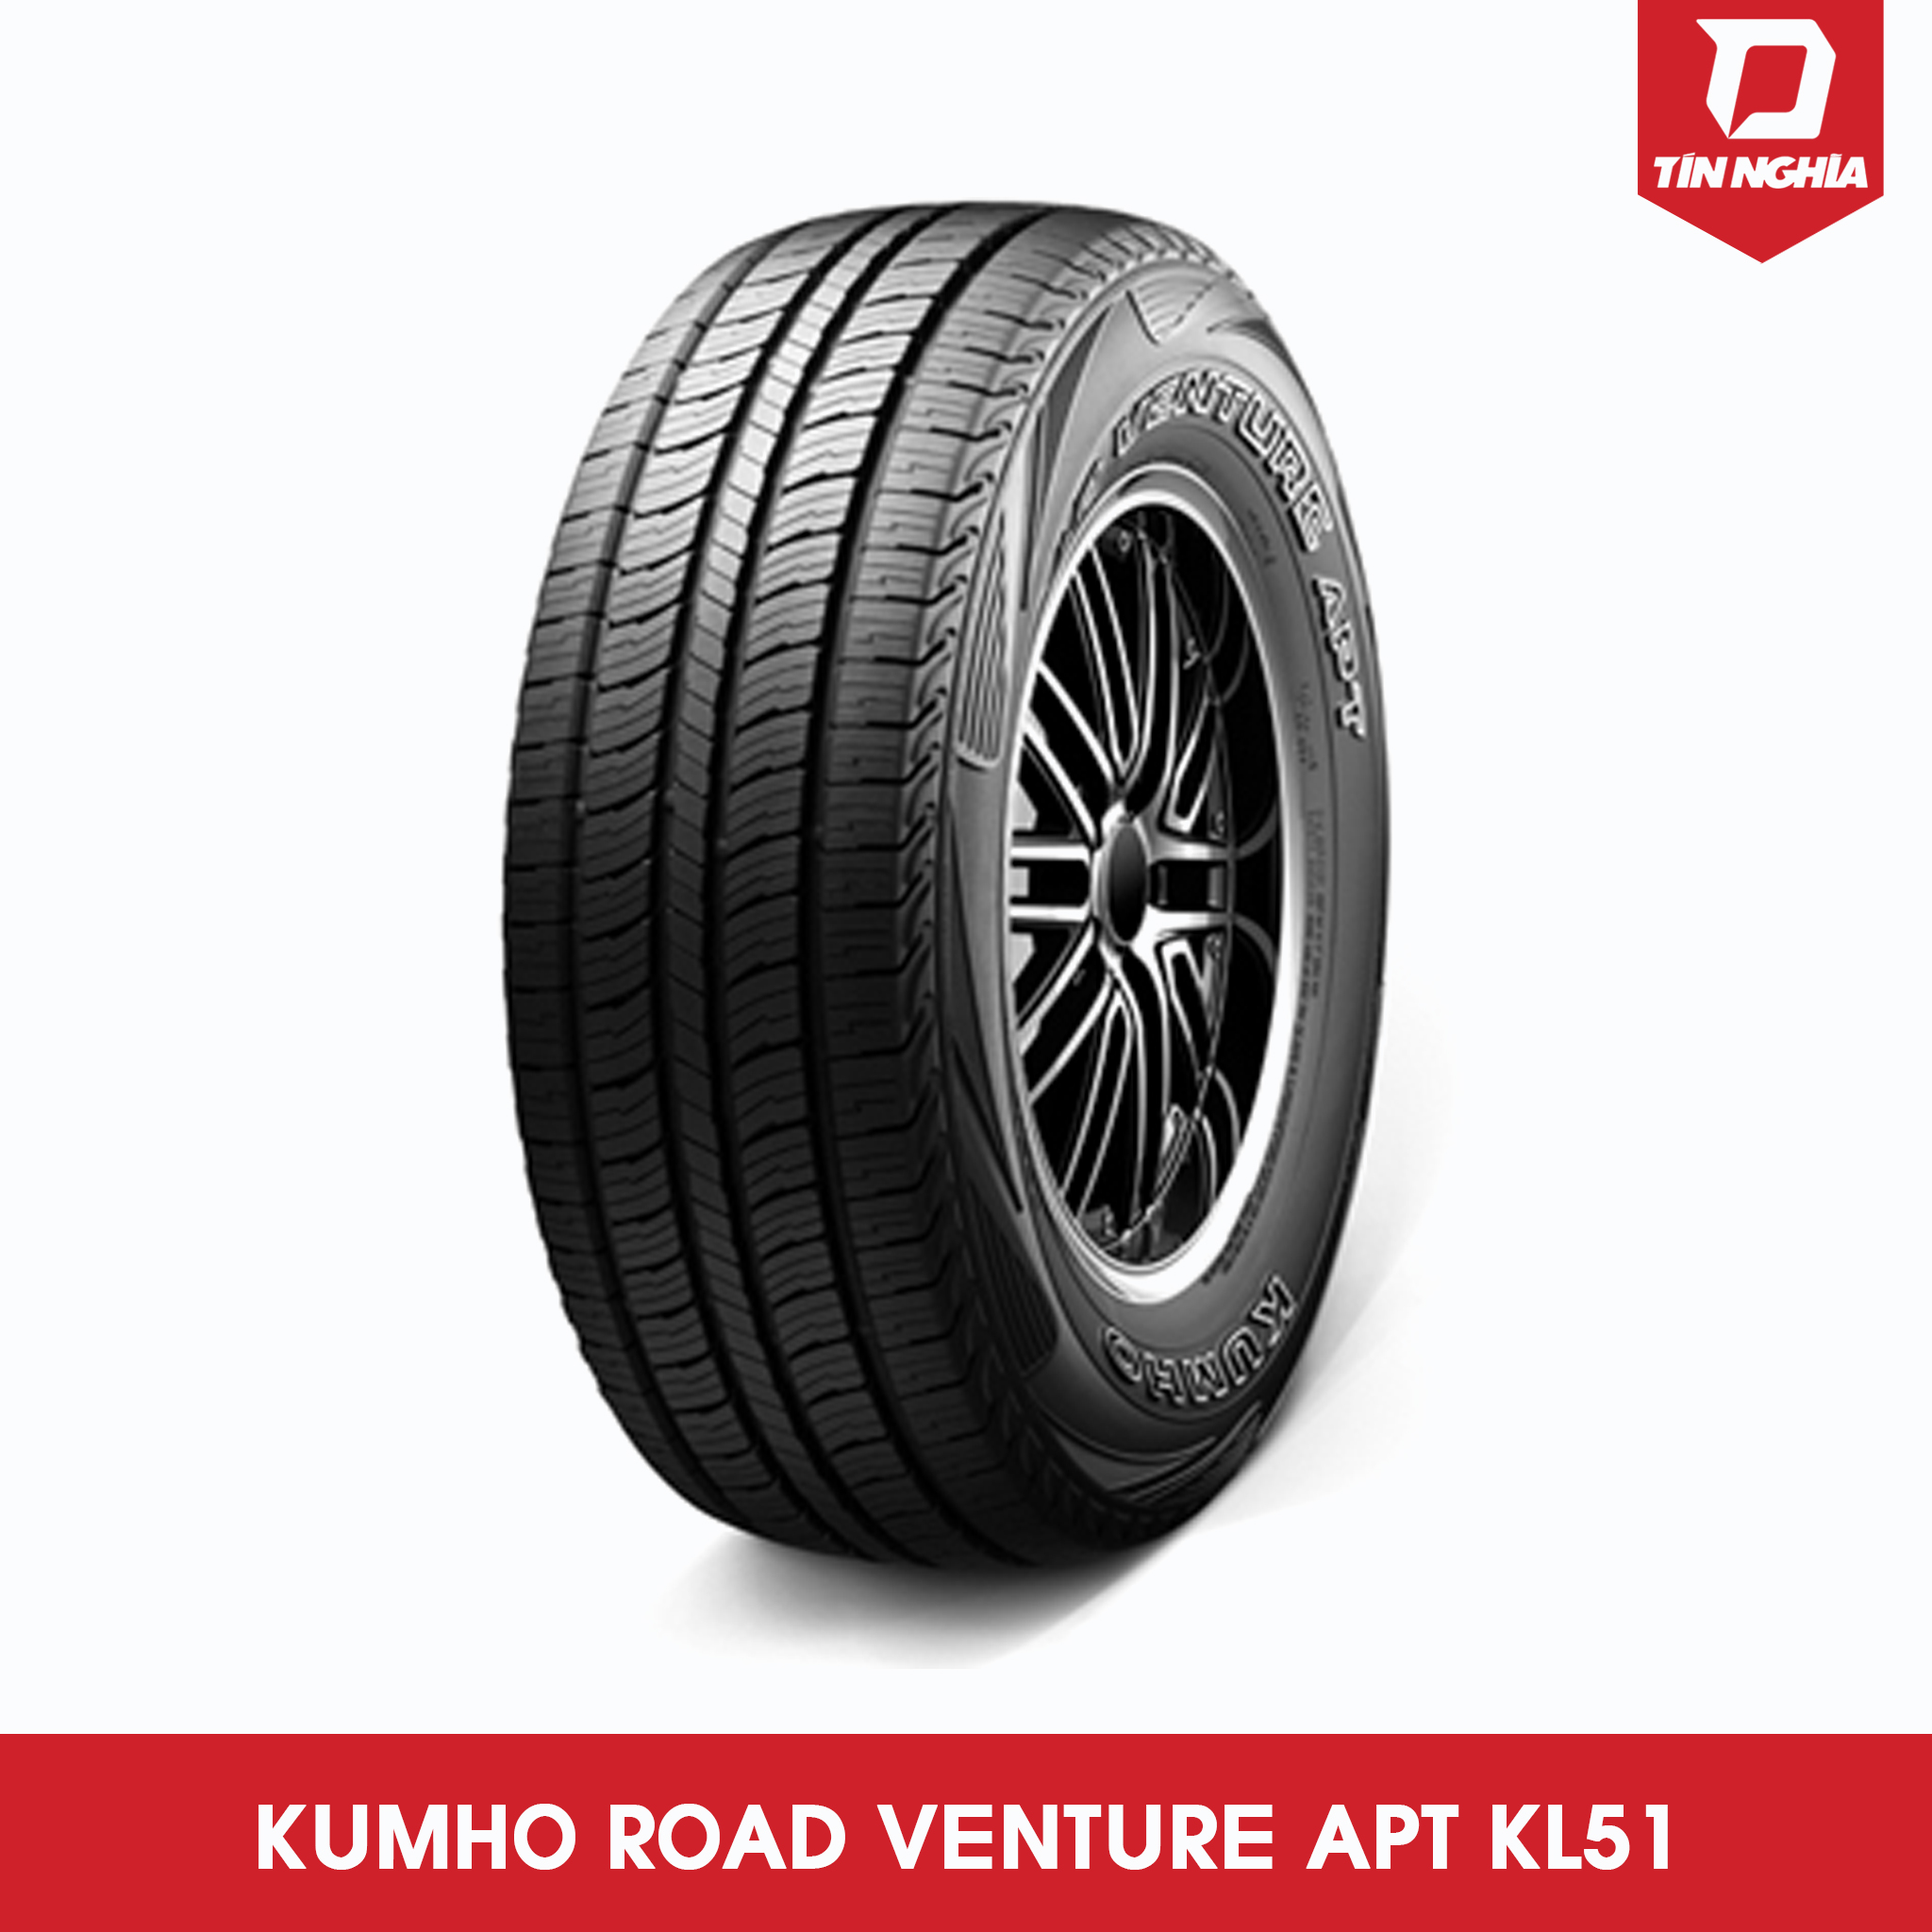 KUMHO ROAD VENTURE APT KL51